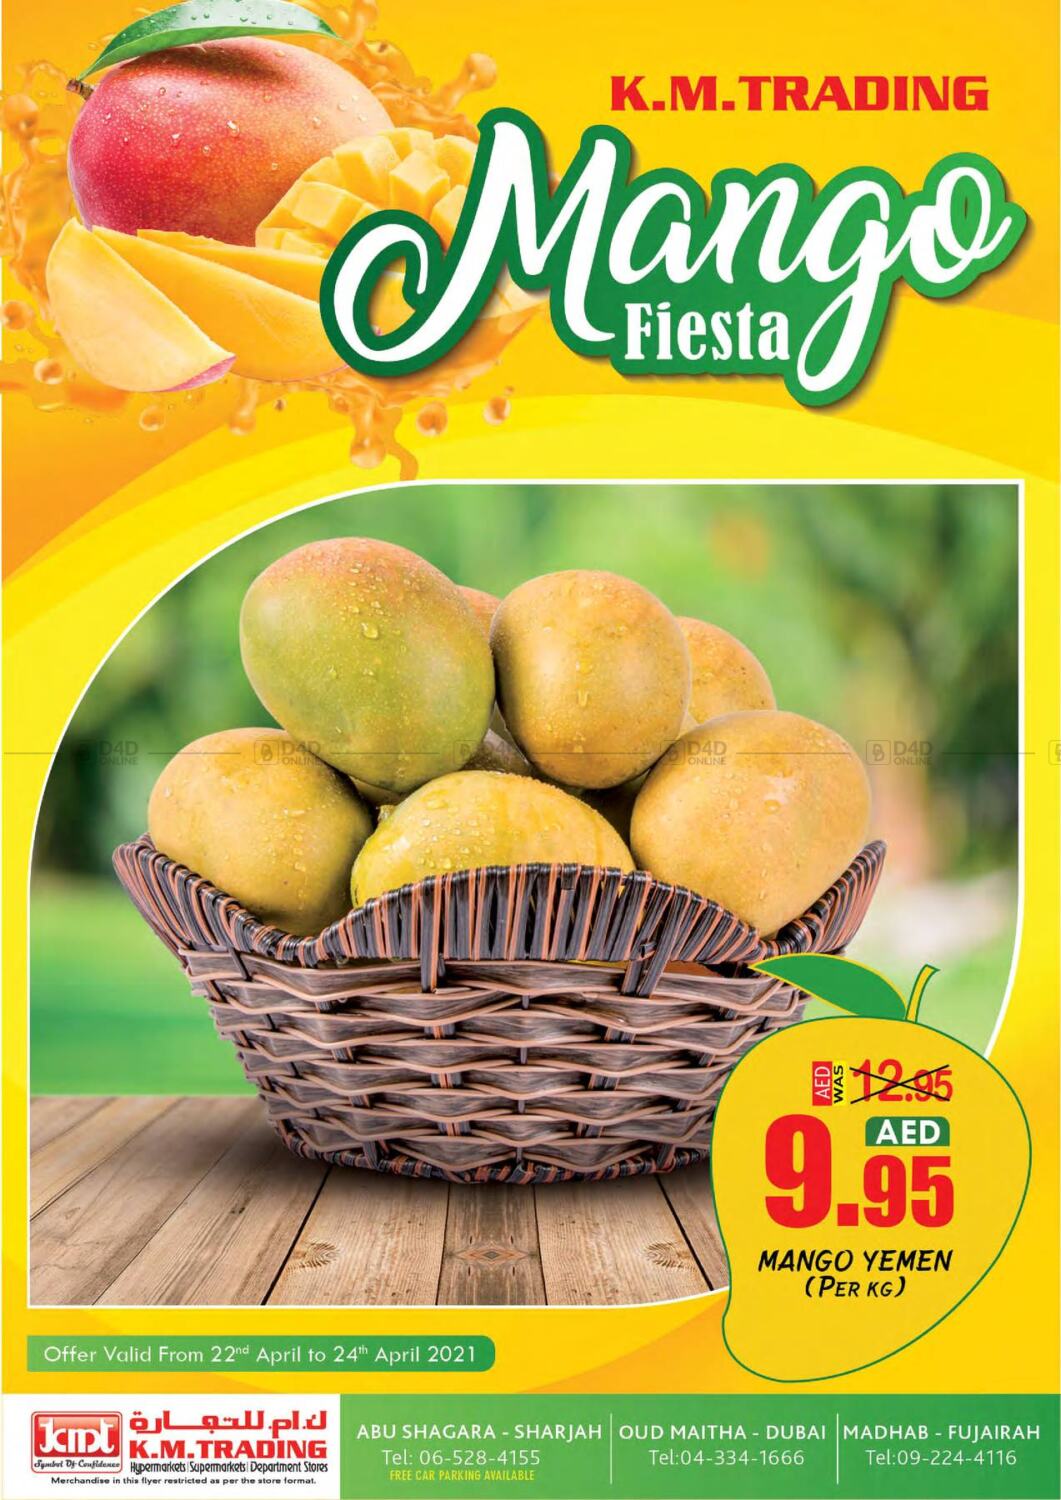 M Trading Mango Fiesta in UAE Abu Dhabi. Till 24th April